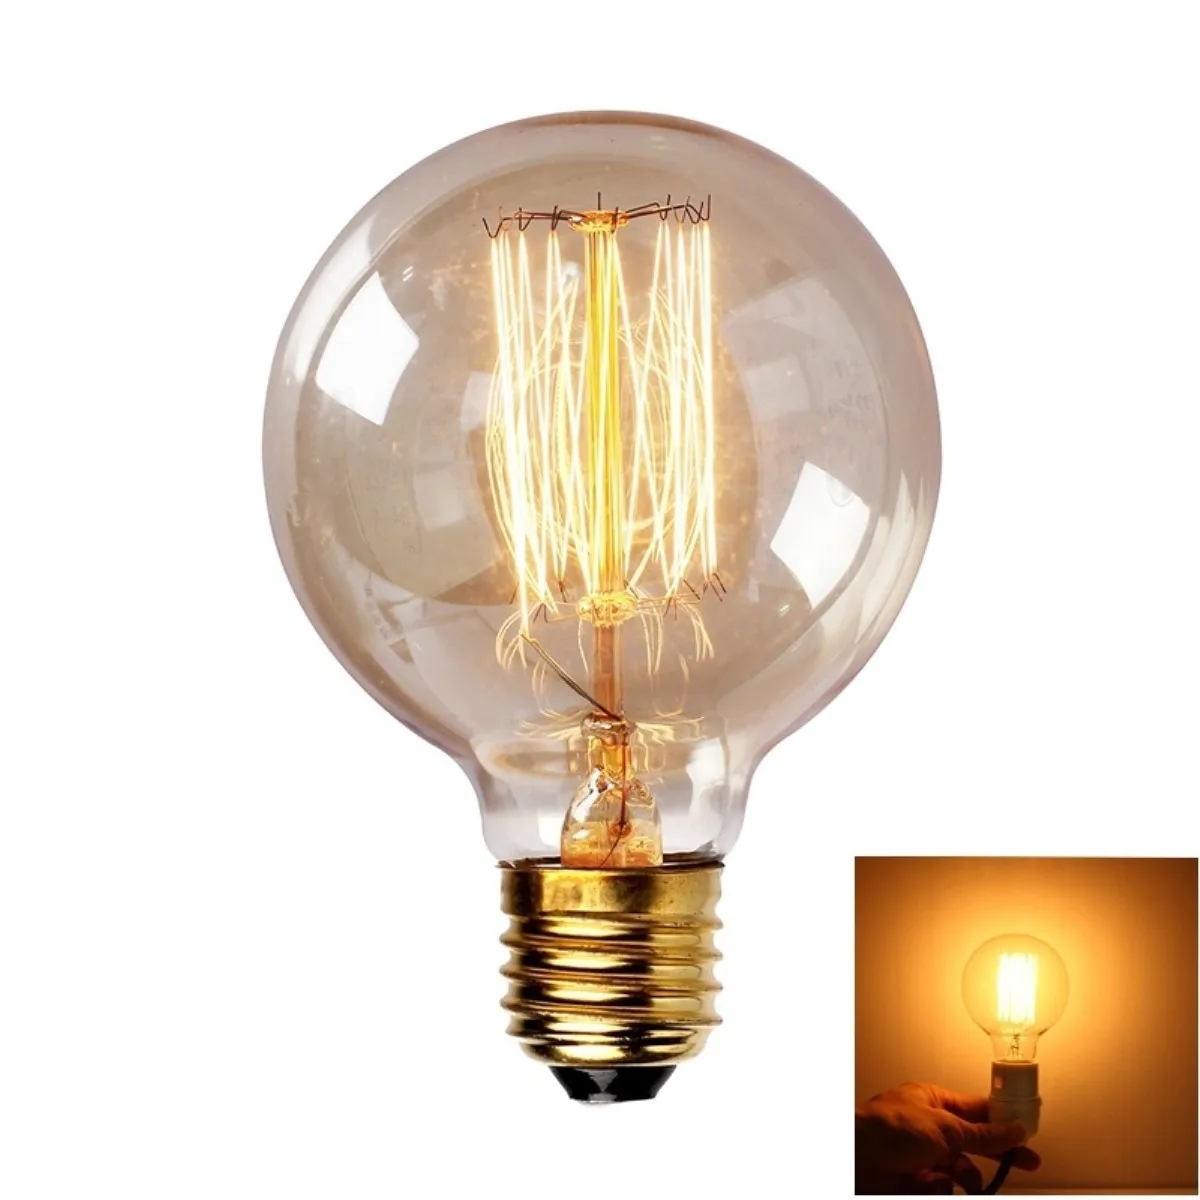 Винтаж Эдисон лампы E27 110 V-220 V подвесной светильник в стиле ретро 40 Вт Винтаж лампа Эдисона лампа G80 нить накаливания лампочки для декора